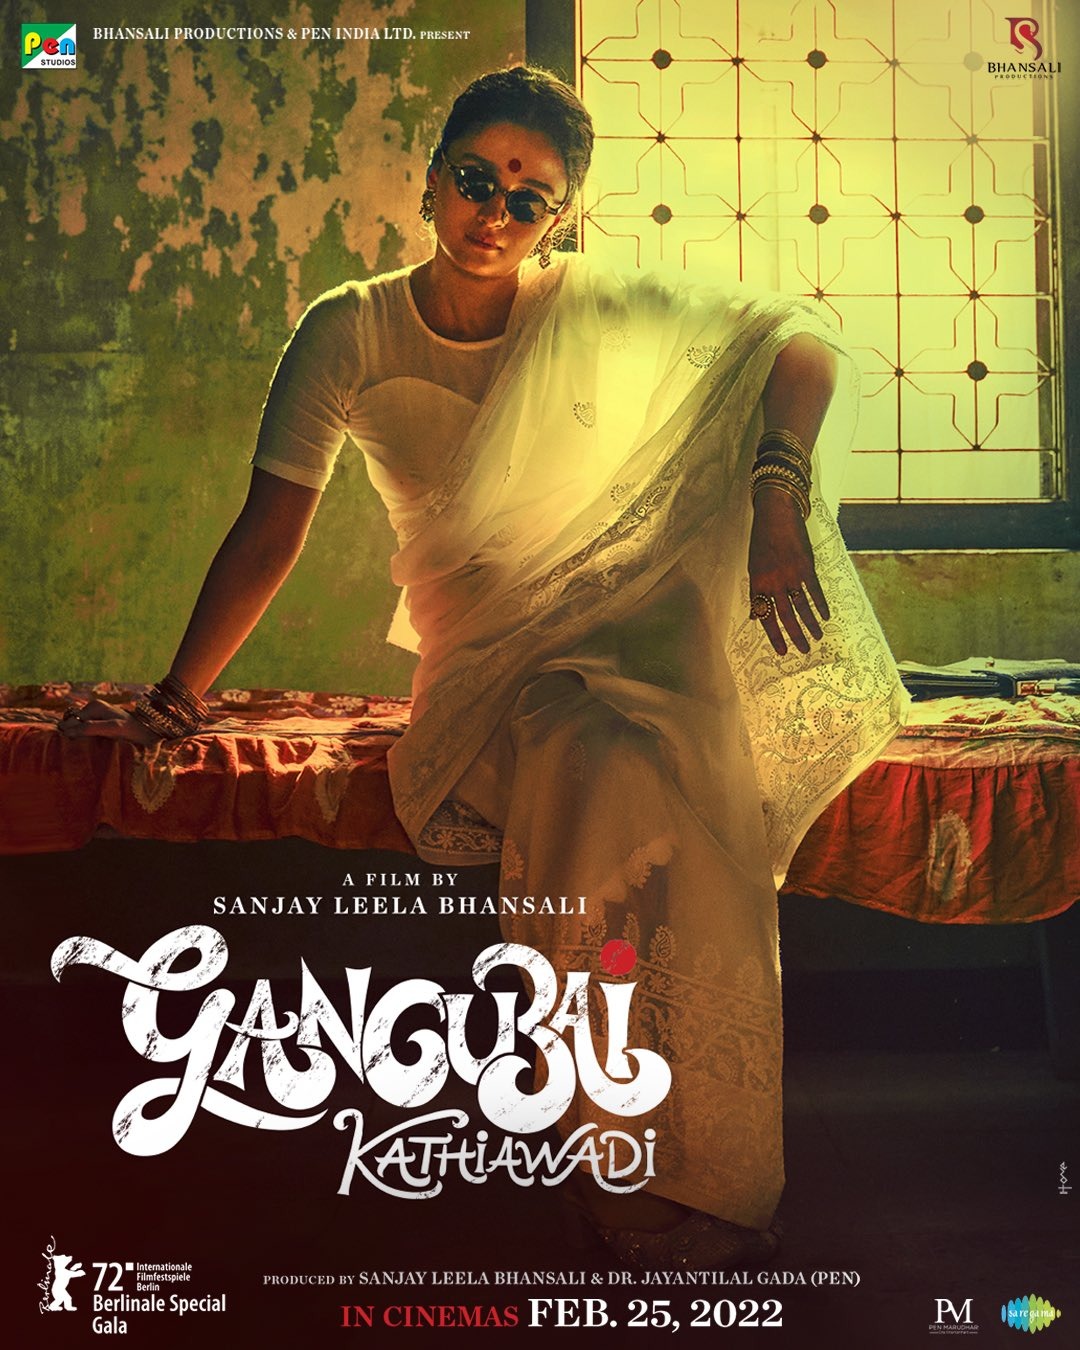 Extra Large Movie Poster Image for Gangubai Kathiawadi 